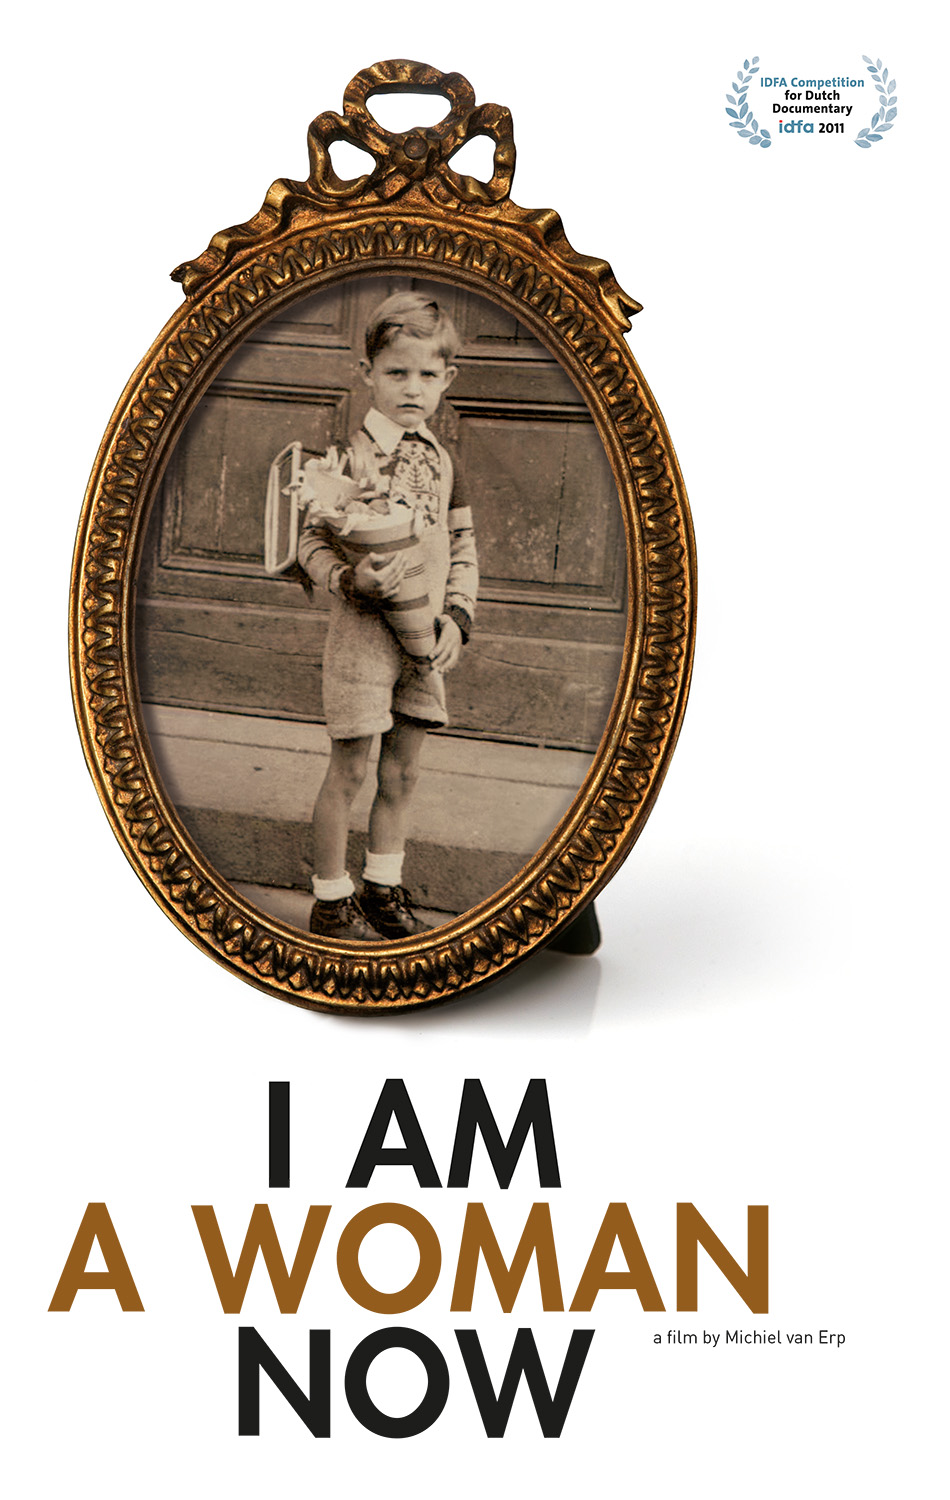 Film poster "I Am A Woman Now" by Michiel van Erp ©CAT DOCS